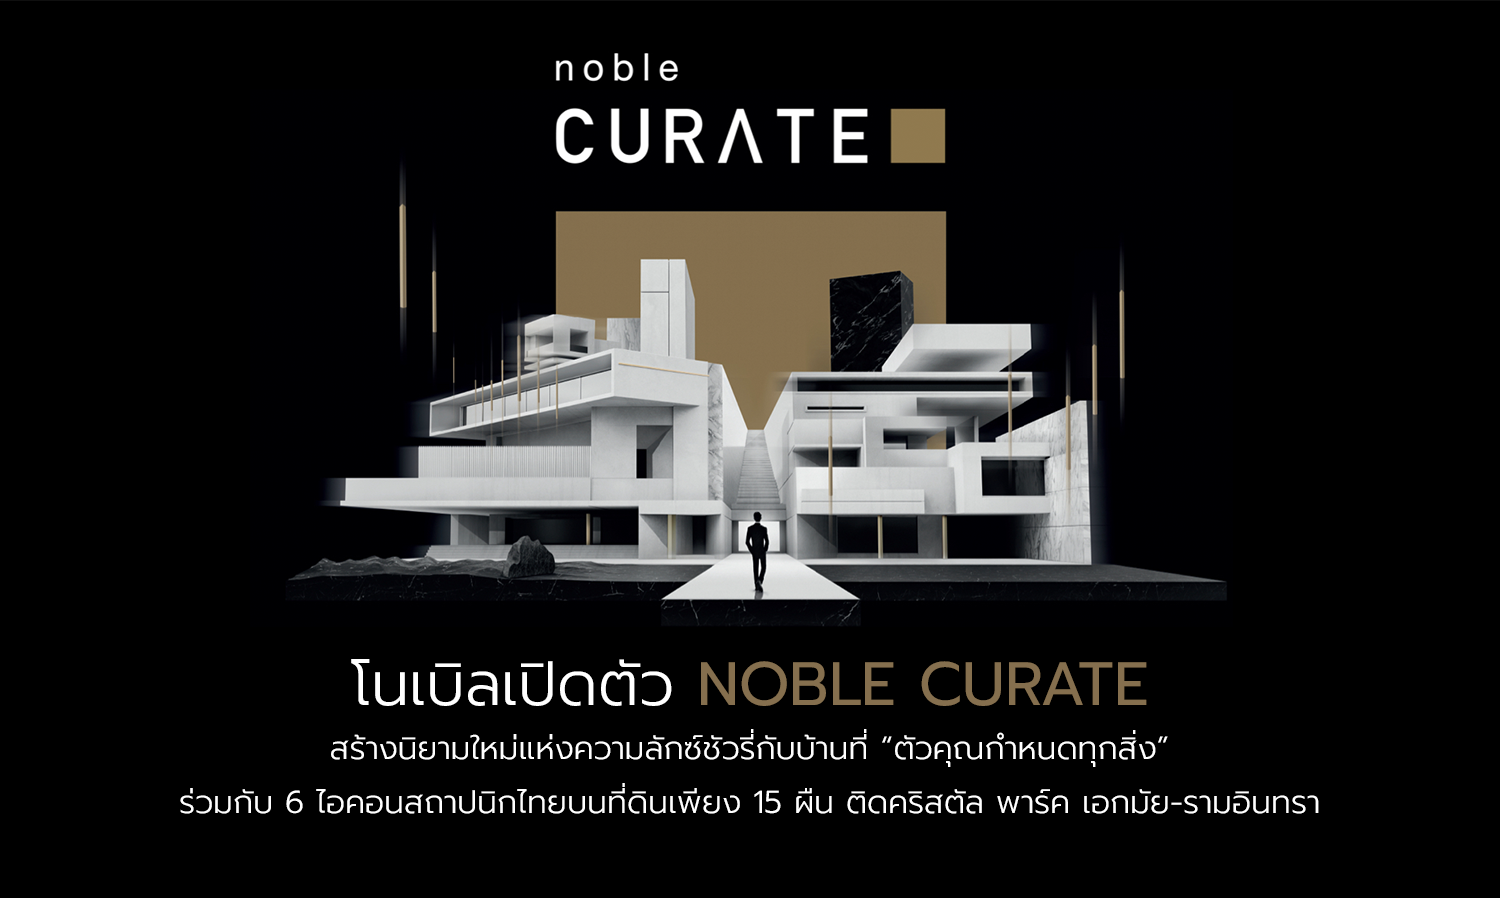 โนเบิลเปิดตัว-noble-curate-สร้างนิยามใหม่แห่งความลักซ์ชัวรี่กับบ้านที่-“ตัวคุณกำหนดทุกสิ่ง”-ร่วมกับ-6-ไอคอนสถาปนิกไทยบนที่ดินเพียง-15-ผืน-ติดคริสตัล-พาร์ค-เอกมัย-รามอินทรา